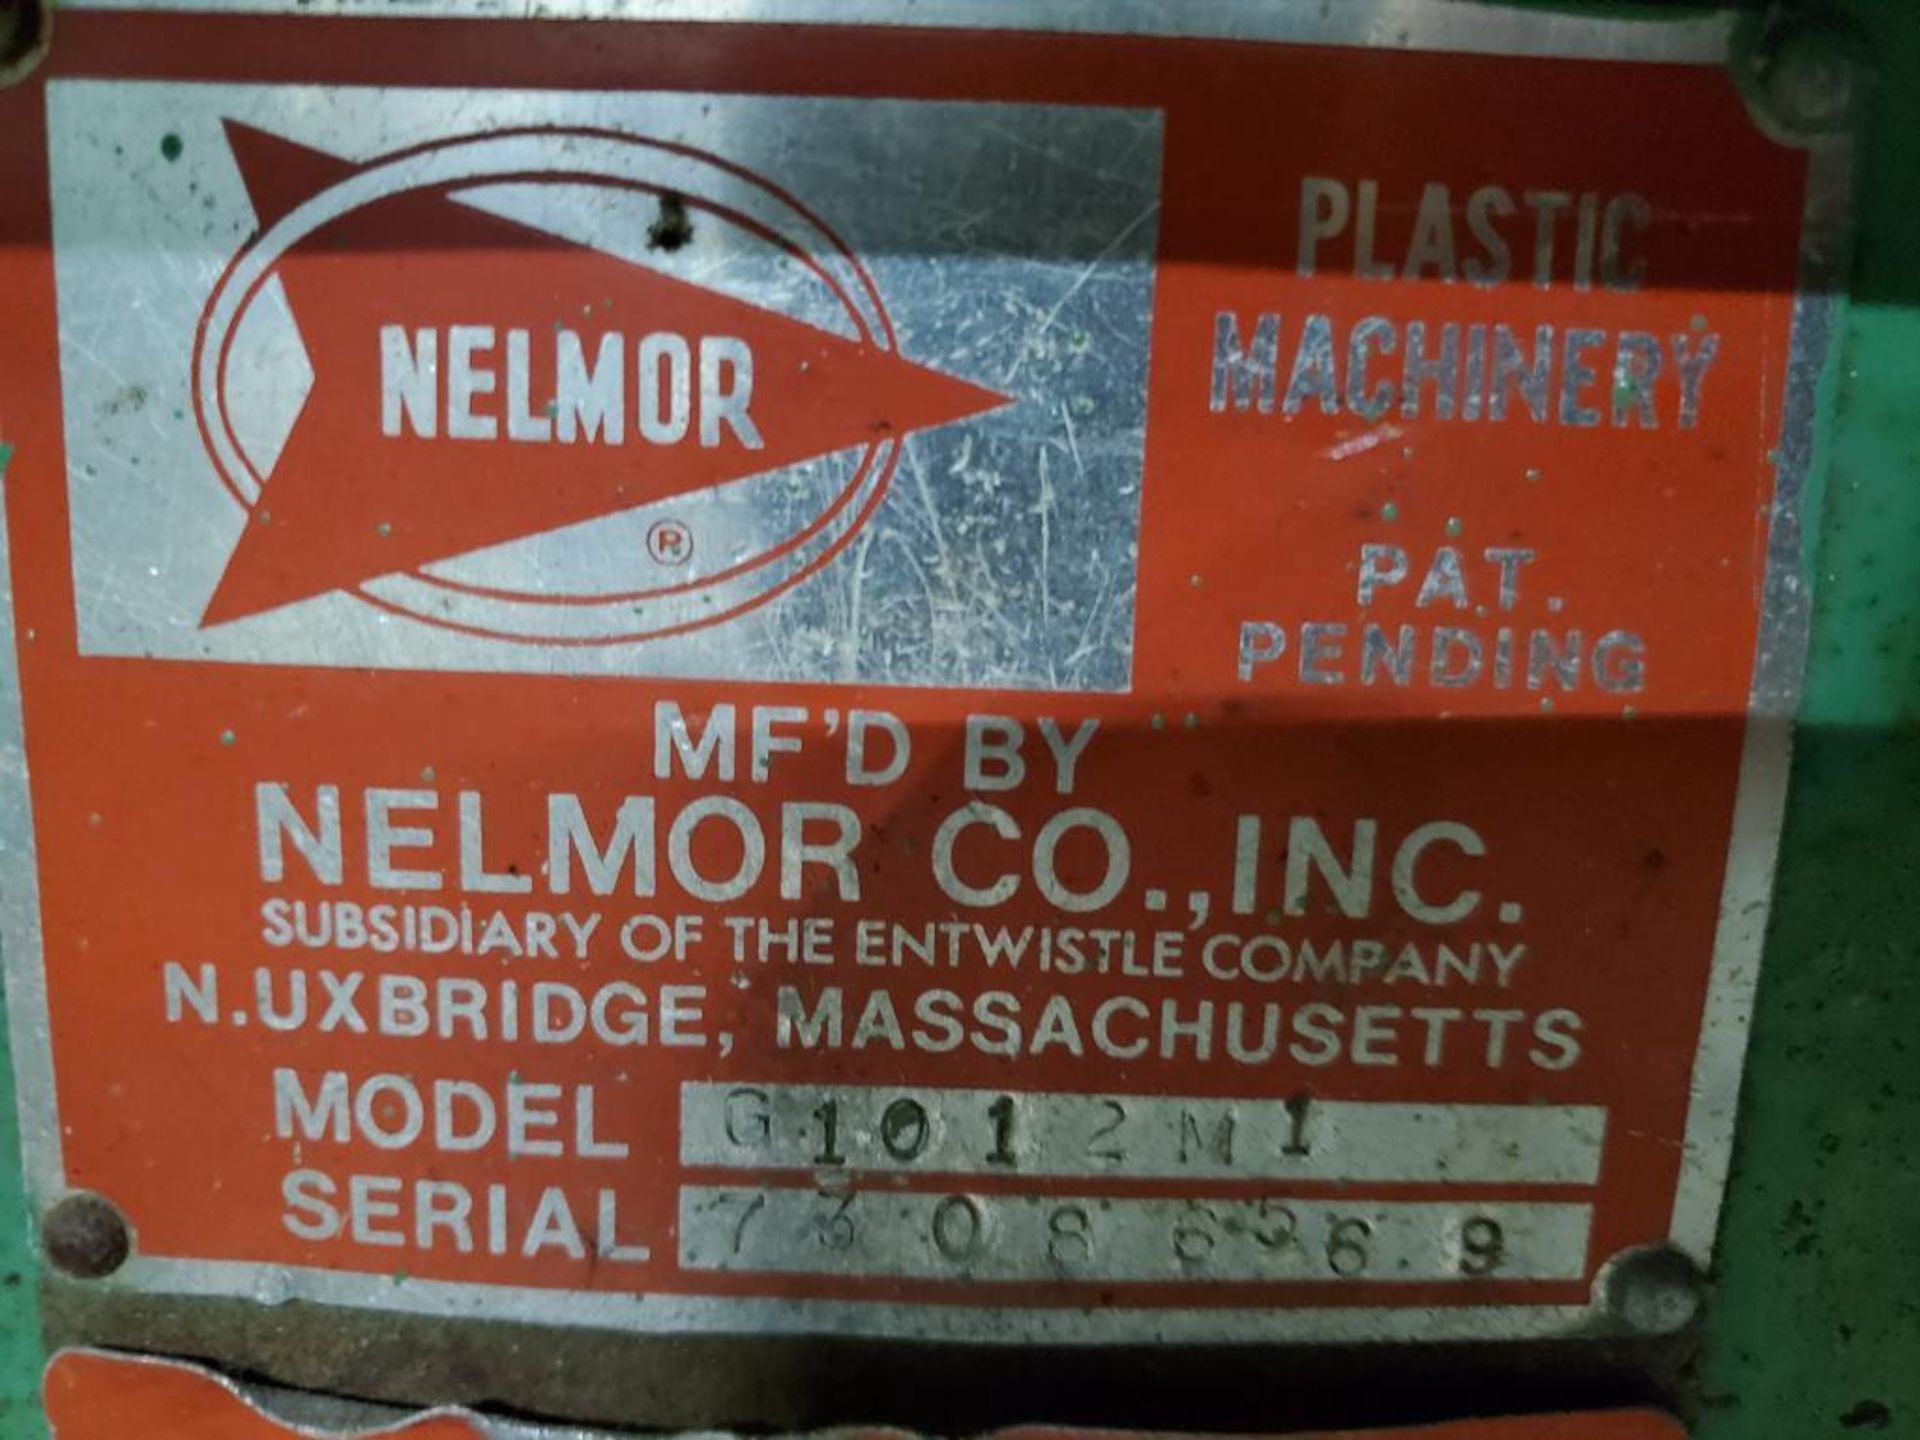 Nelmor Granulator Grinder, Model G1012M1, S/N 73086569, 5 HP - Image 3 of 6